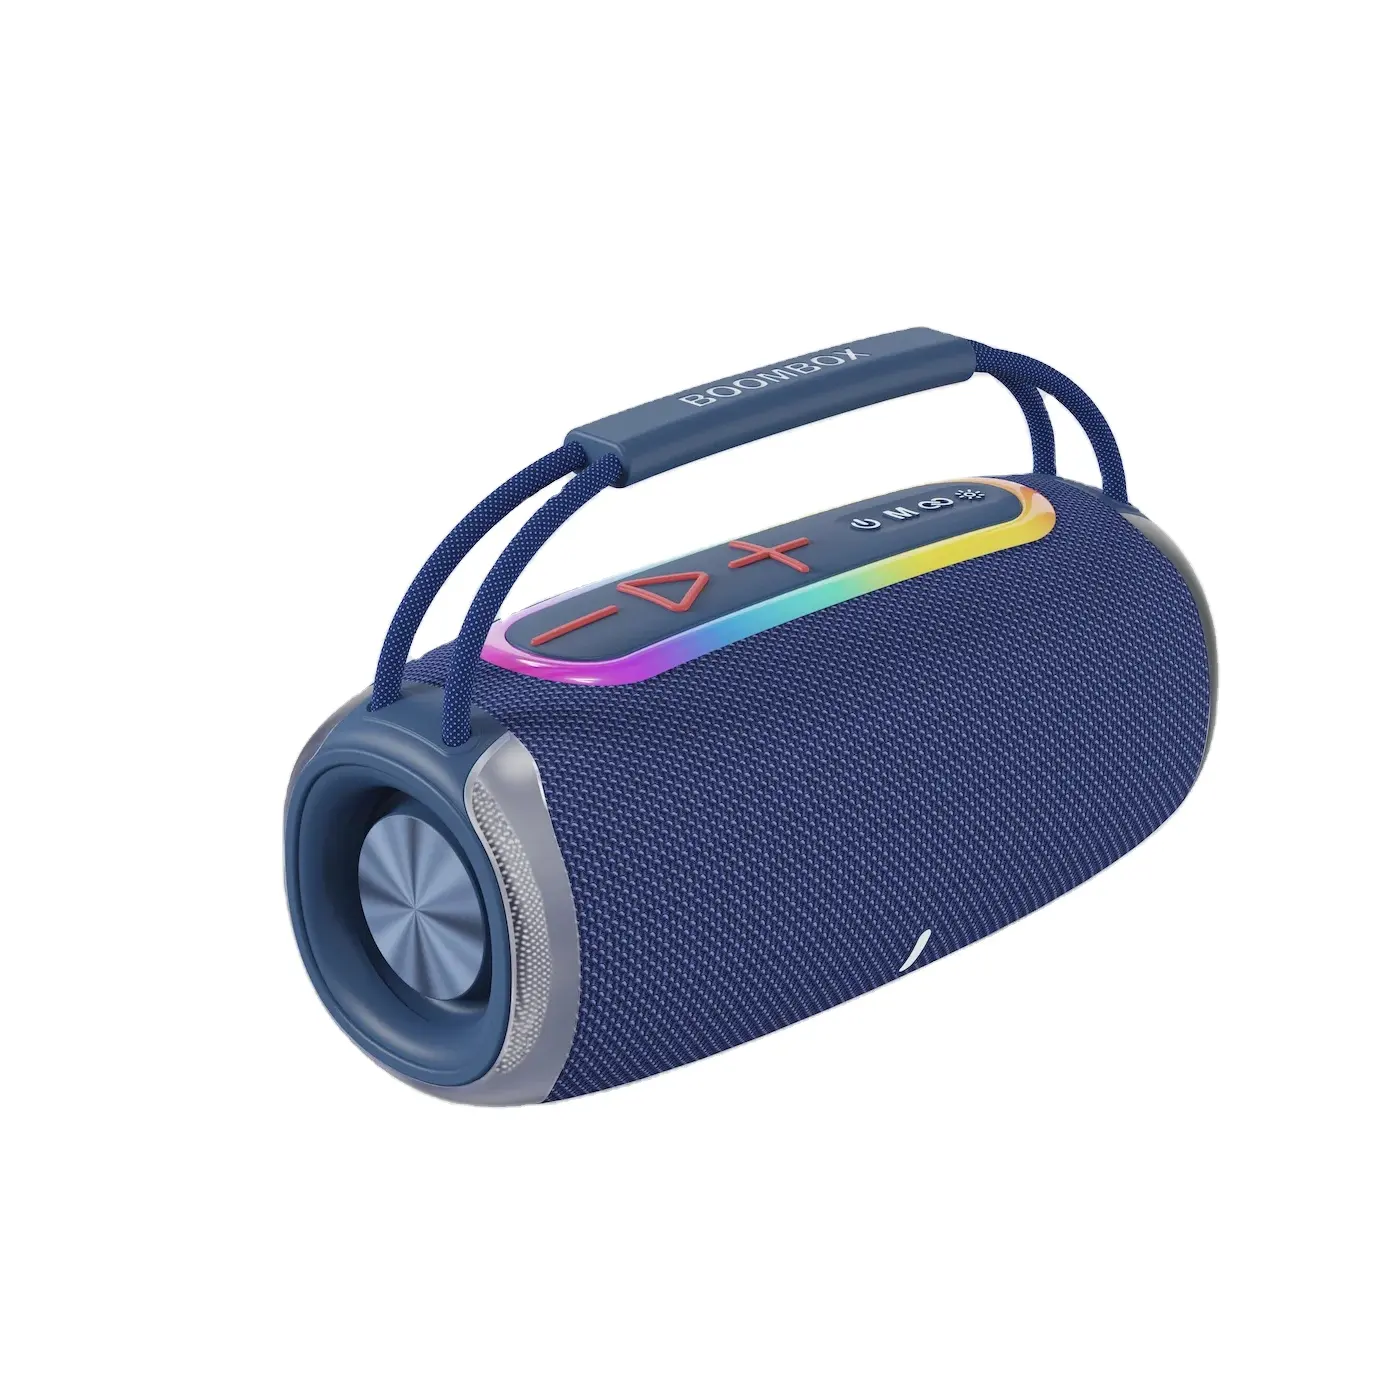 Fabrika toptan Boombox S680 Mini hoparlörler açık kablosuz müzik çalar Partybox bas taşınabilir hediye Boombox hoparlörler